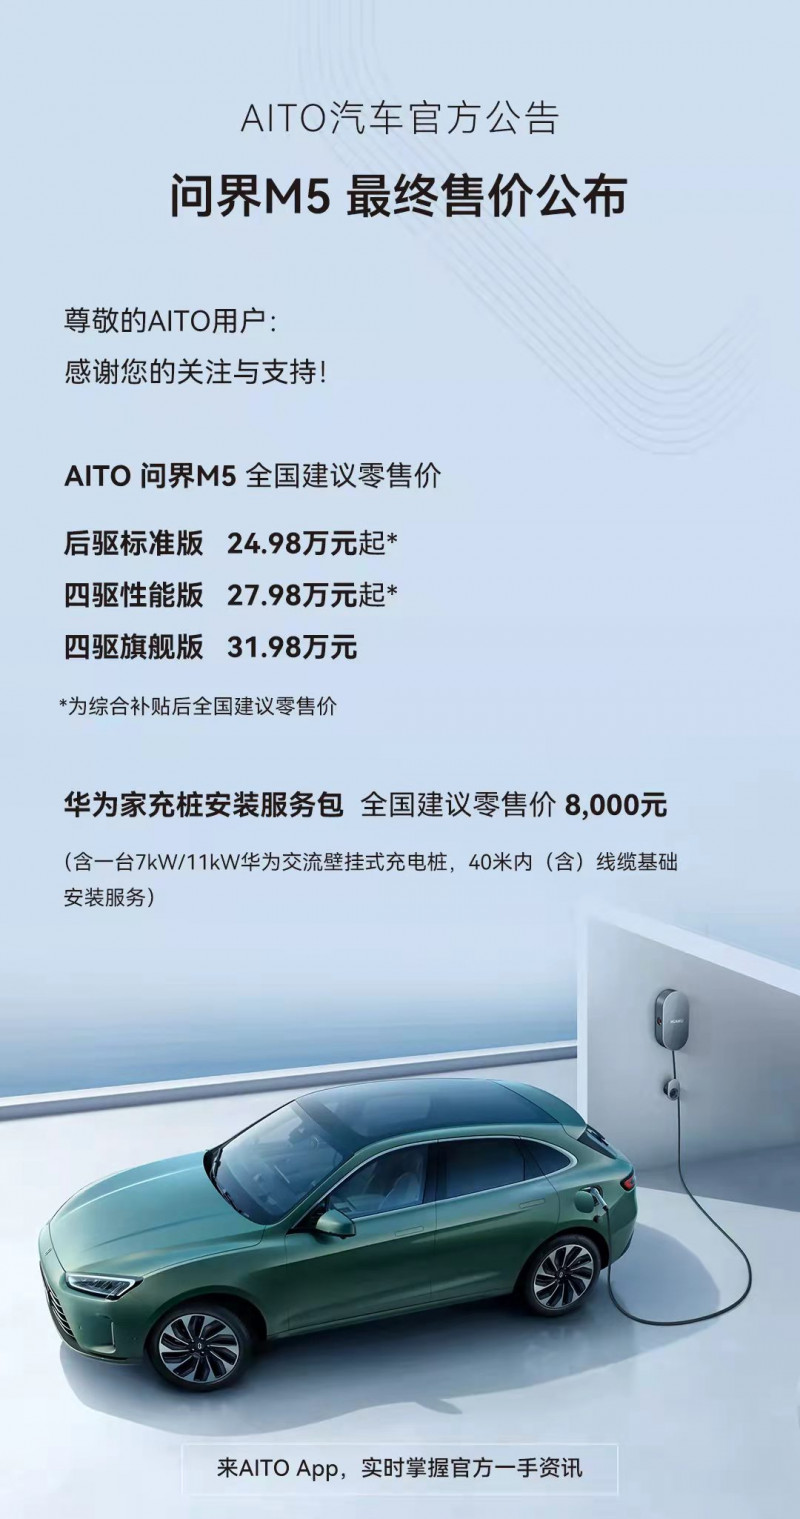 售价24.98万元起/续航里程超1000km AITO问界M5公布最终售价